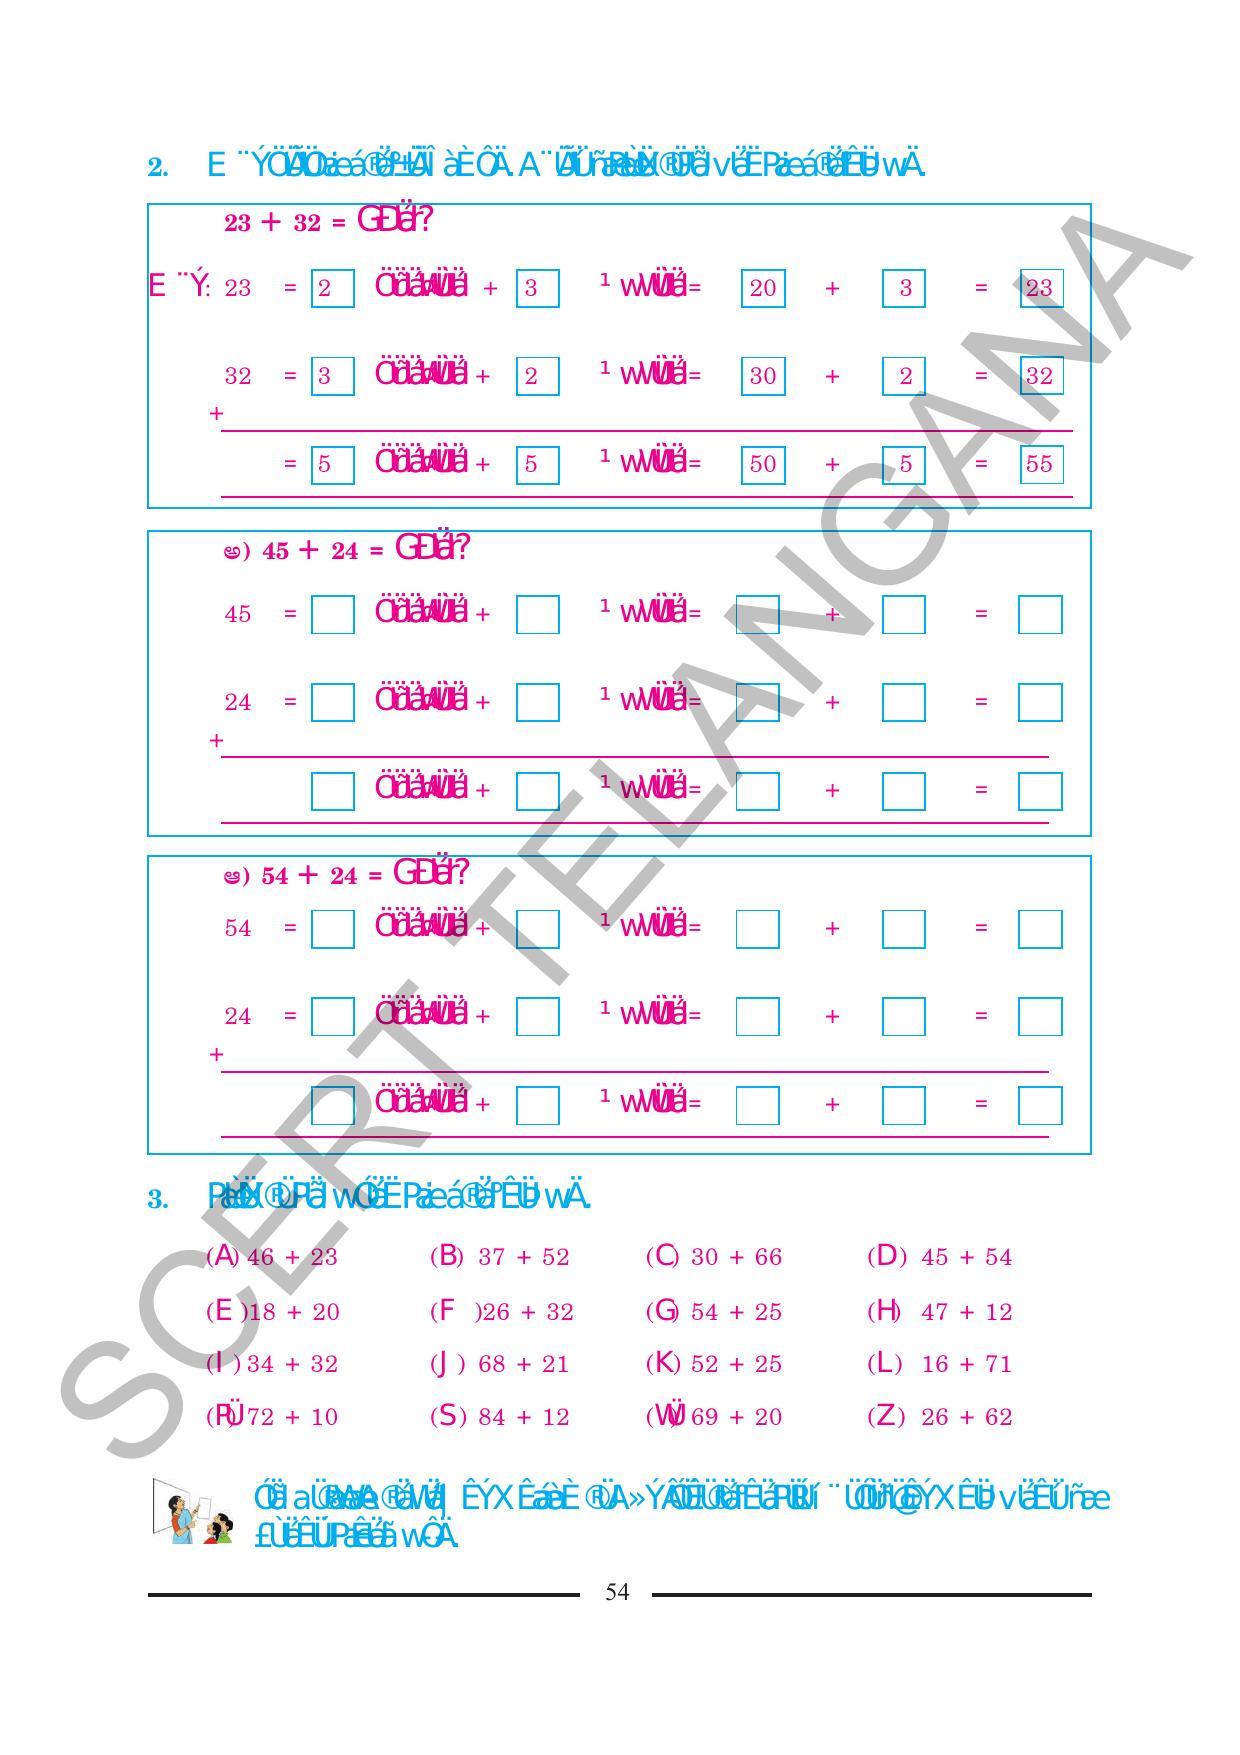 TS SCERT Class 2 Maths (Kannada Medium) Text Book - Page 66